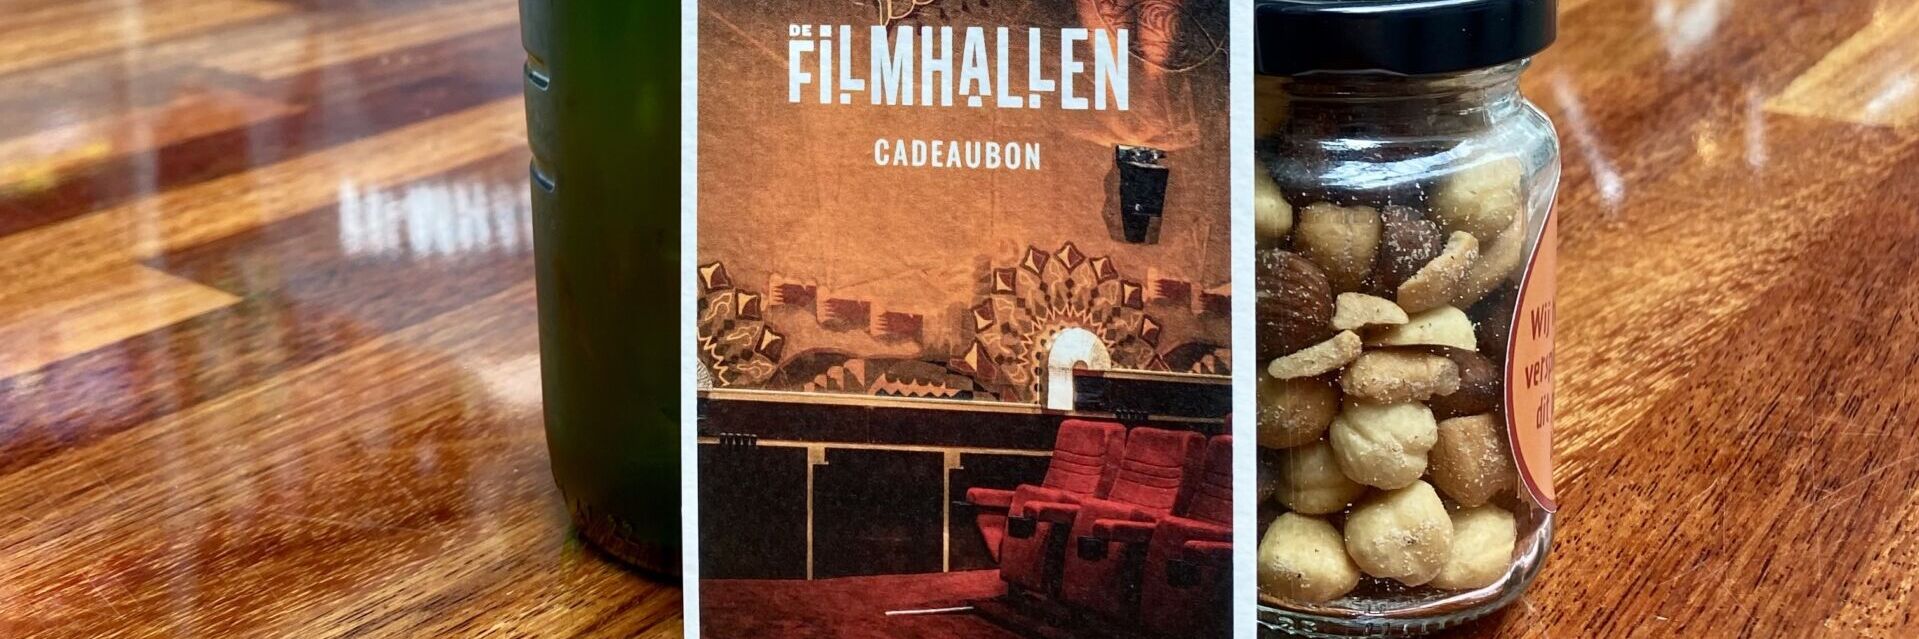 Poster: FilmHallen Cadeaubon